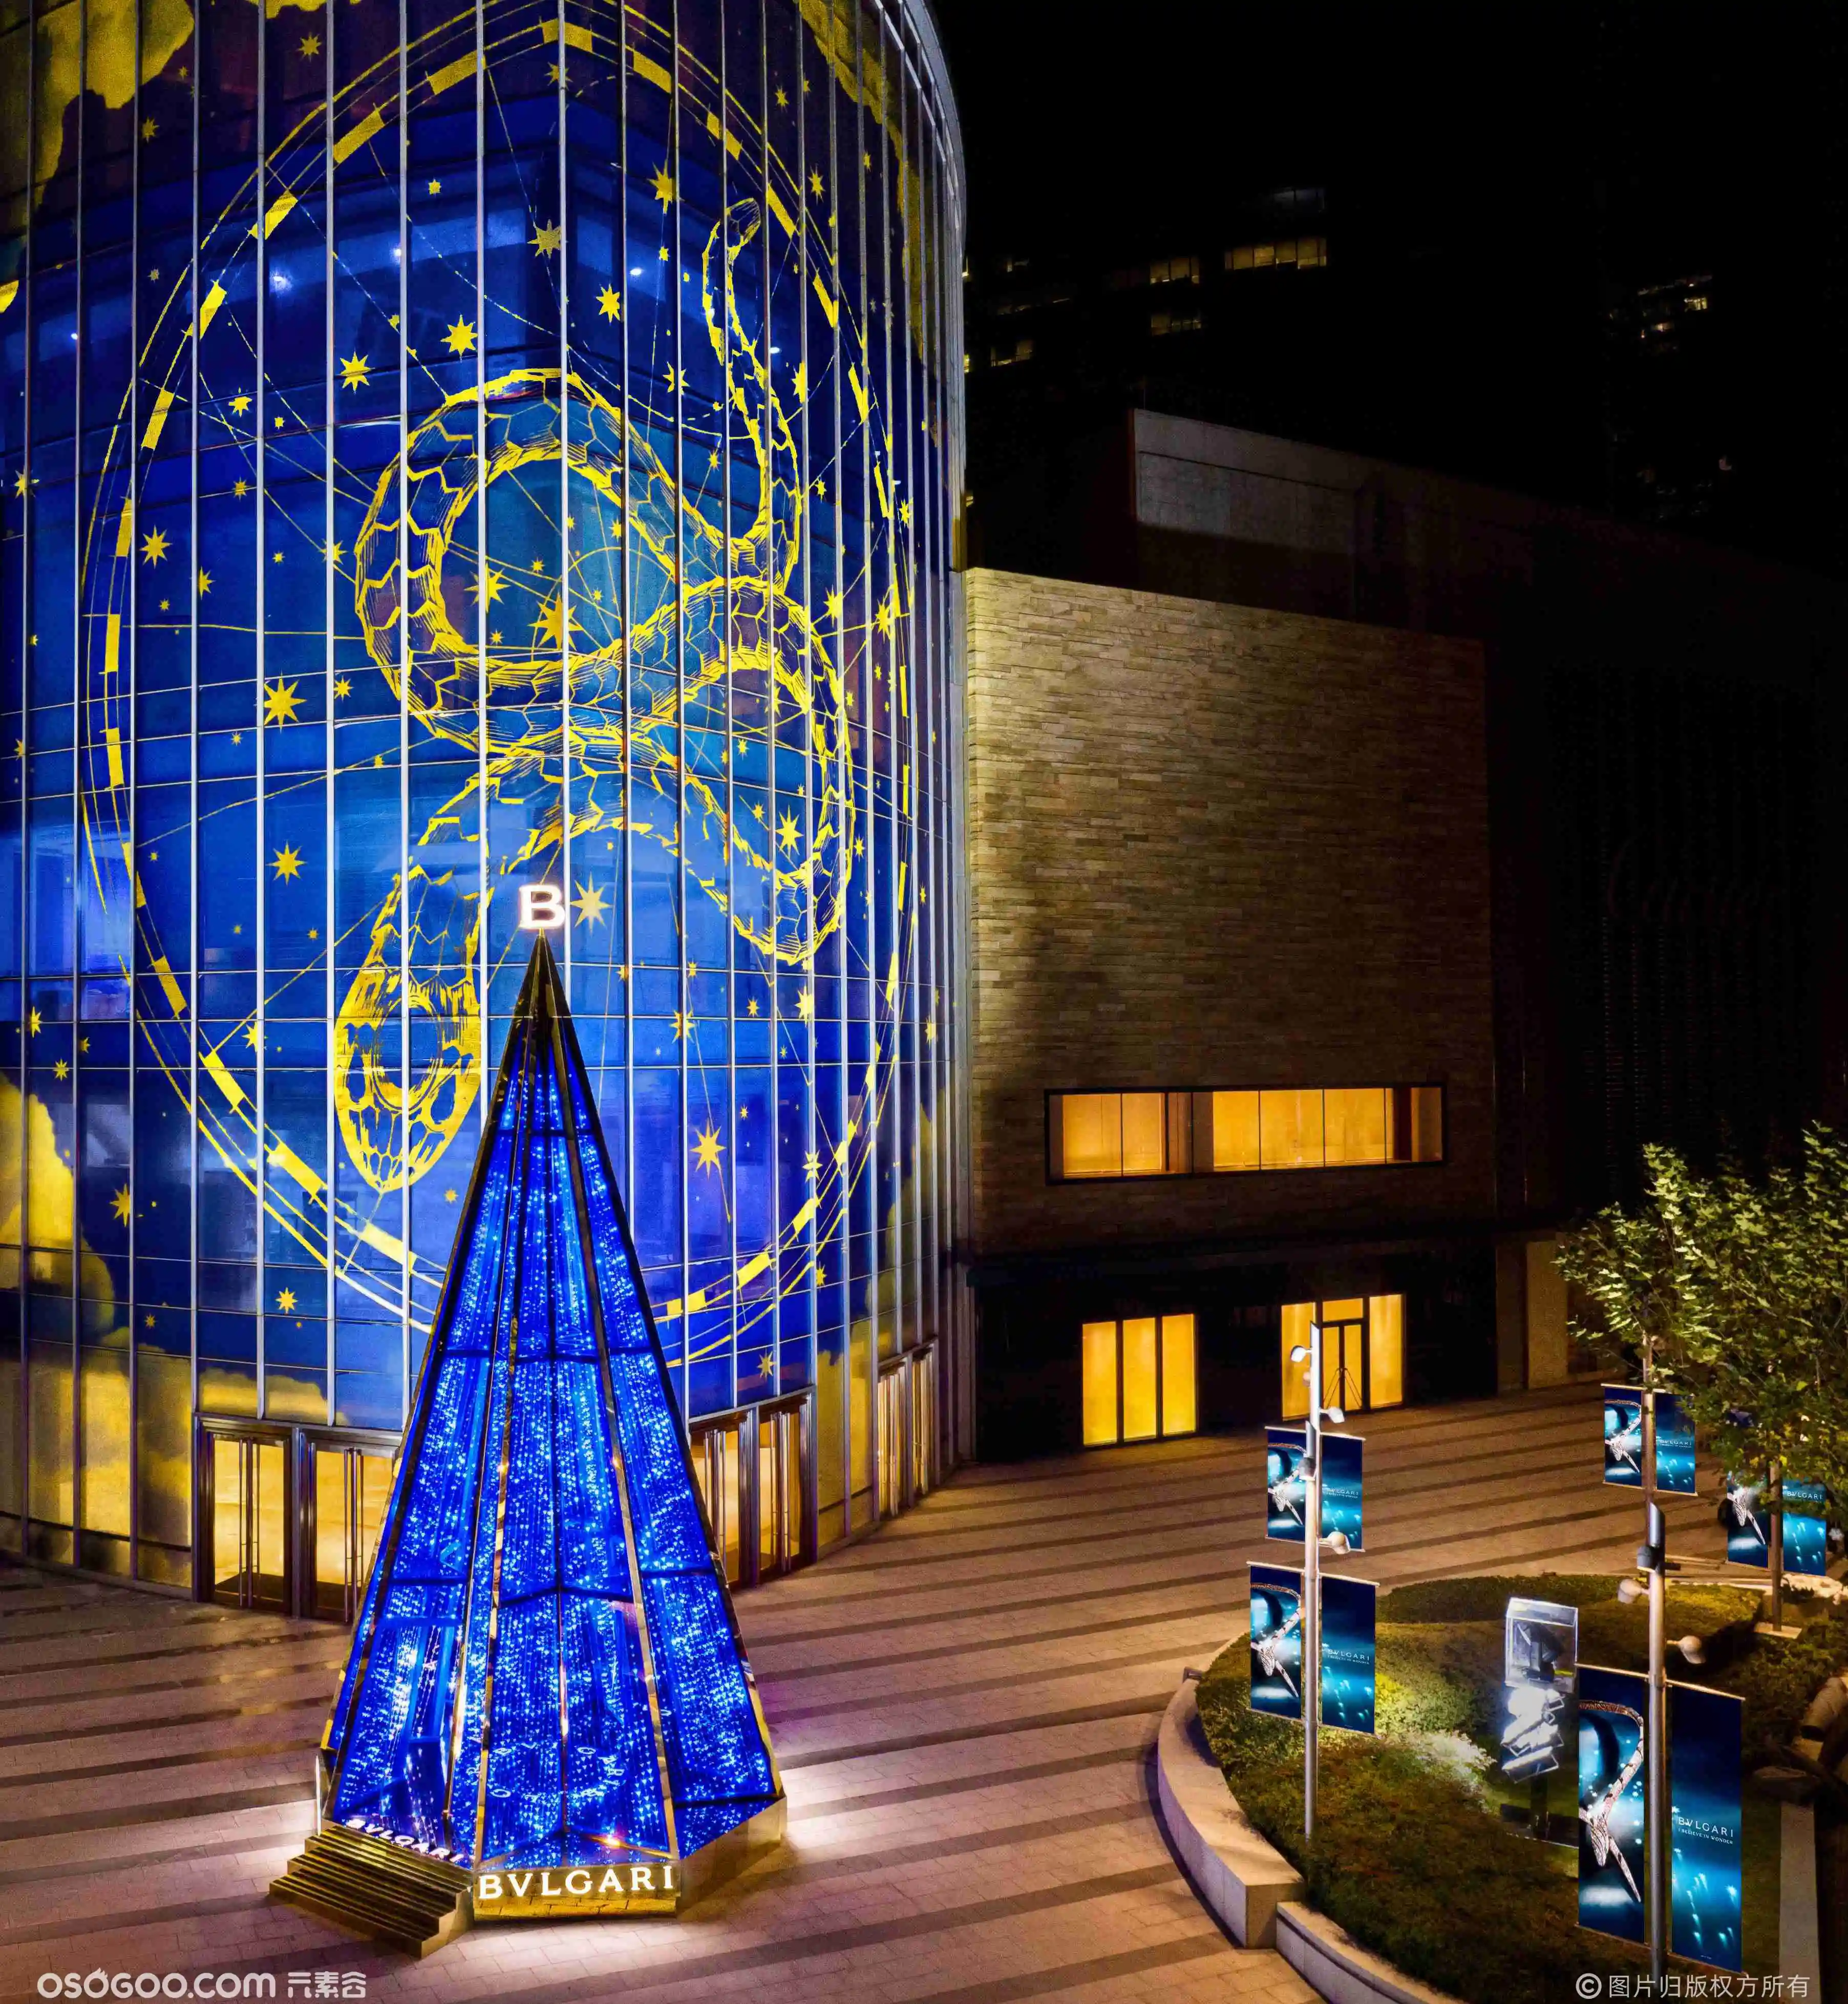 「 点亮奇迹之光 」BVLGARI宝格丽圣诞树艺术装置